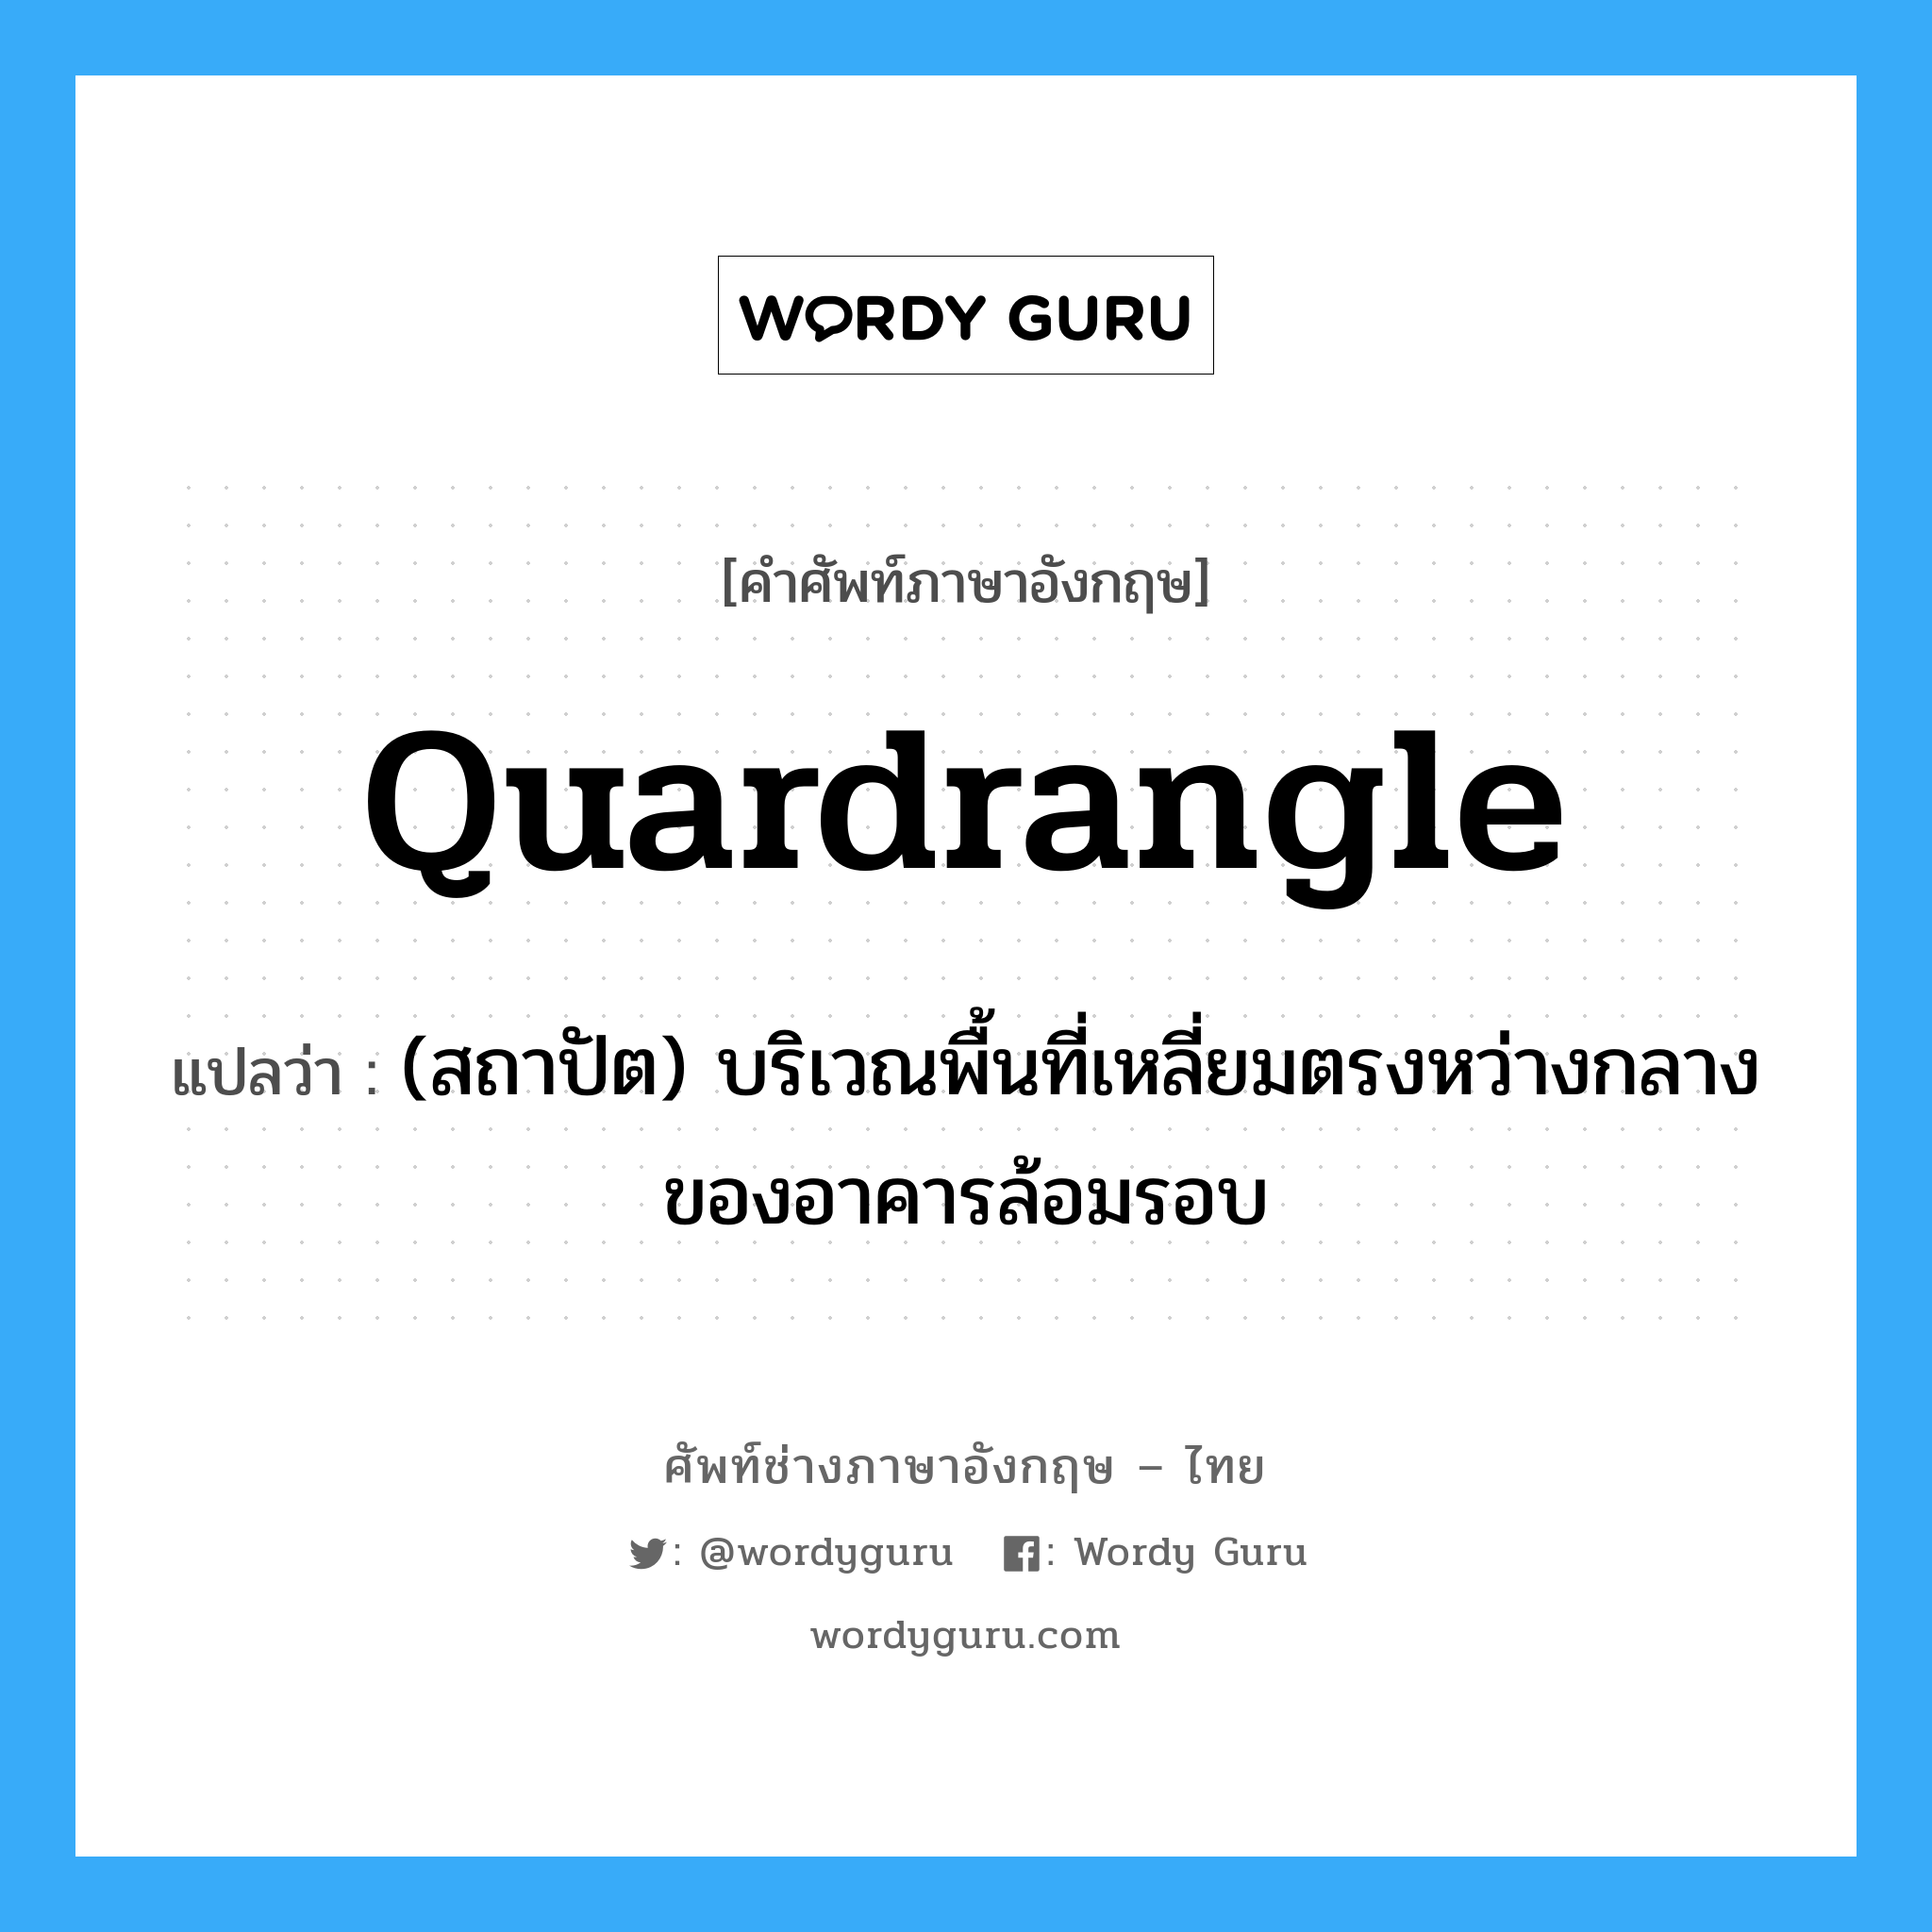 quardrangle แปลว่า?, คำศัพท์ช่างภาษาอังกฤษ - ไทย quardrangle คำศัพท์ภาษาอังกฤษ quardrangle แปลว่า (สถาปัต) บริเวณพื้นที่เหลี่ยมตรงหว่างกลางของอาคารล้อมรอบ